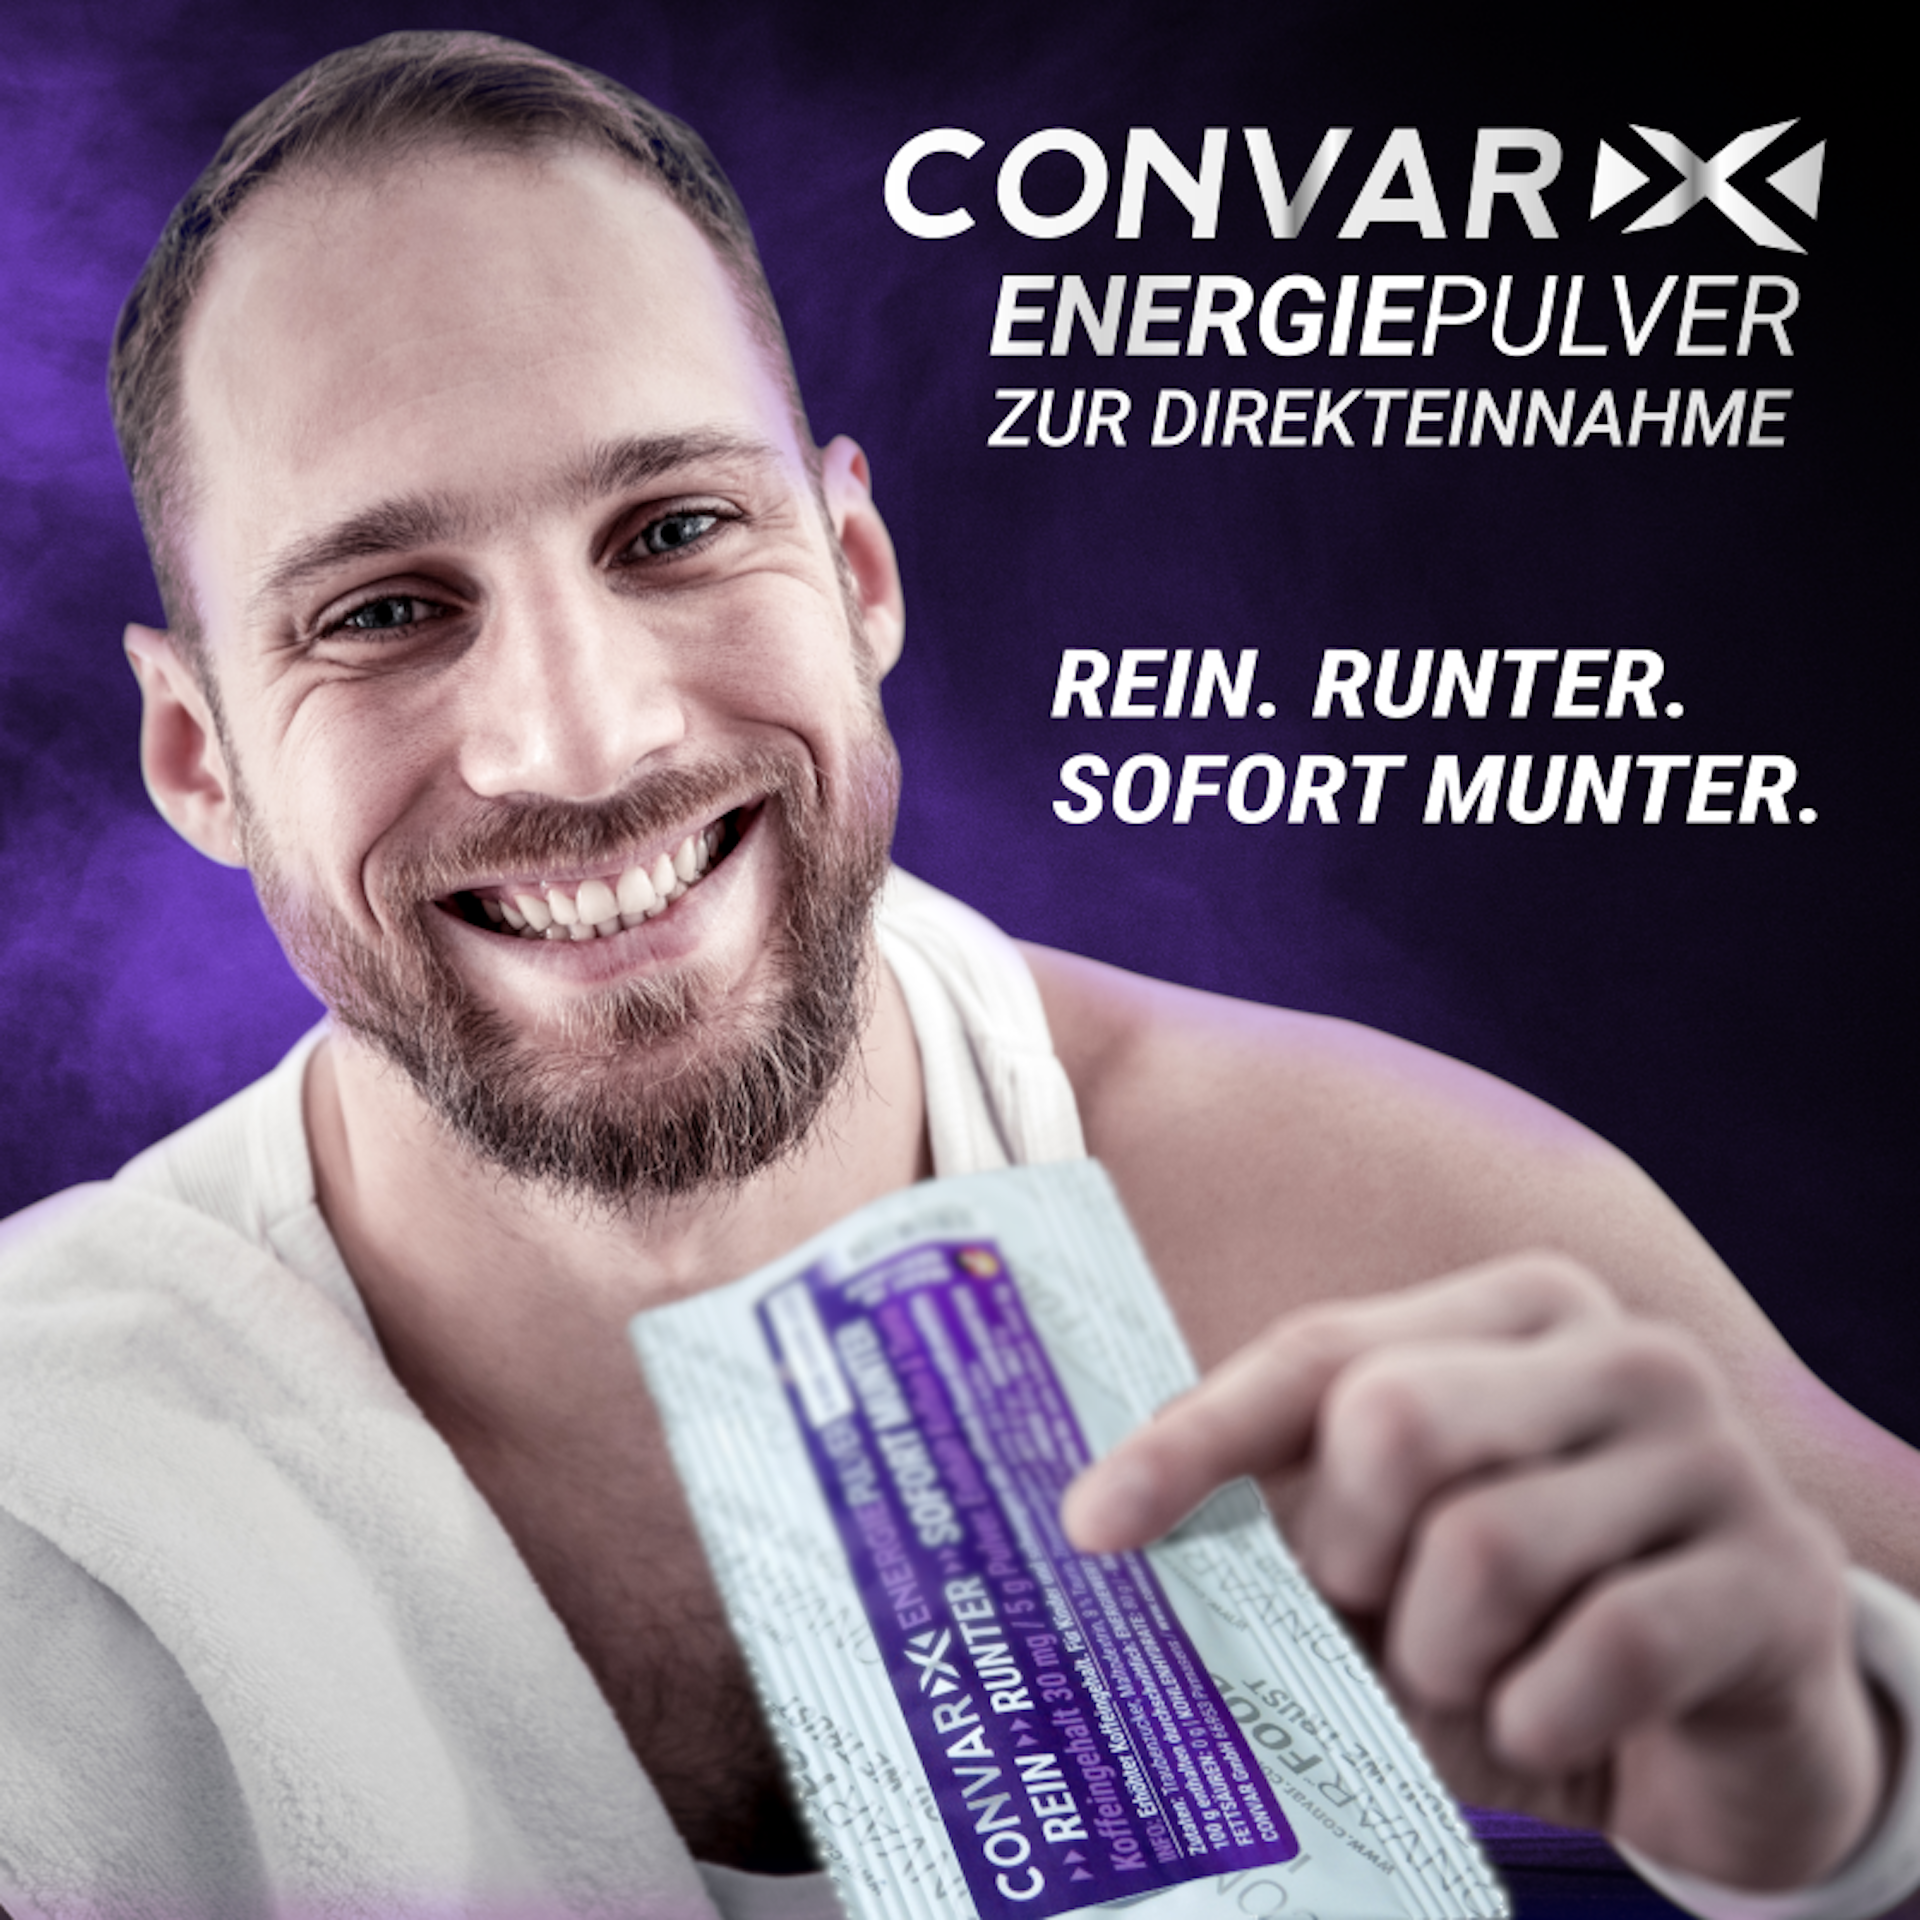 CONVAR-X Energiepulver